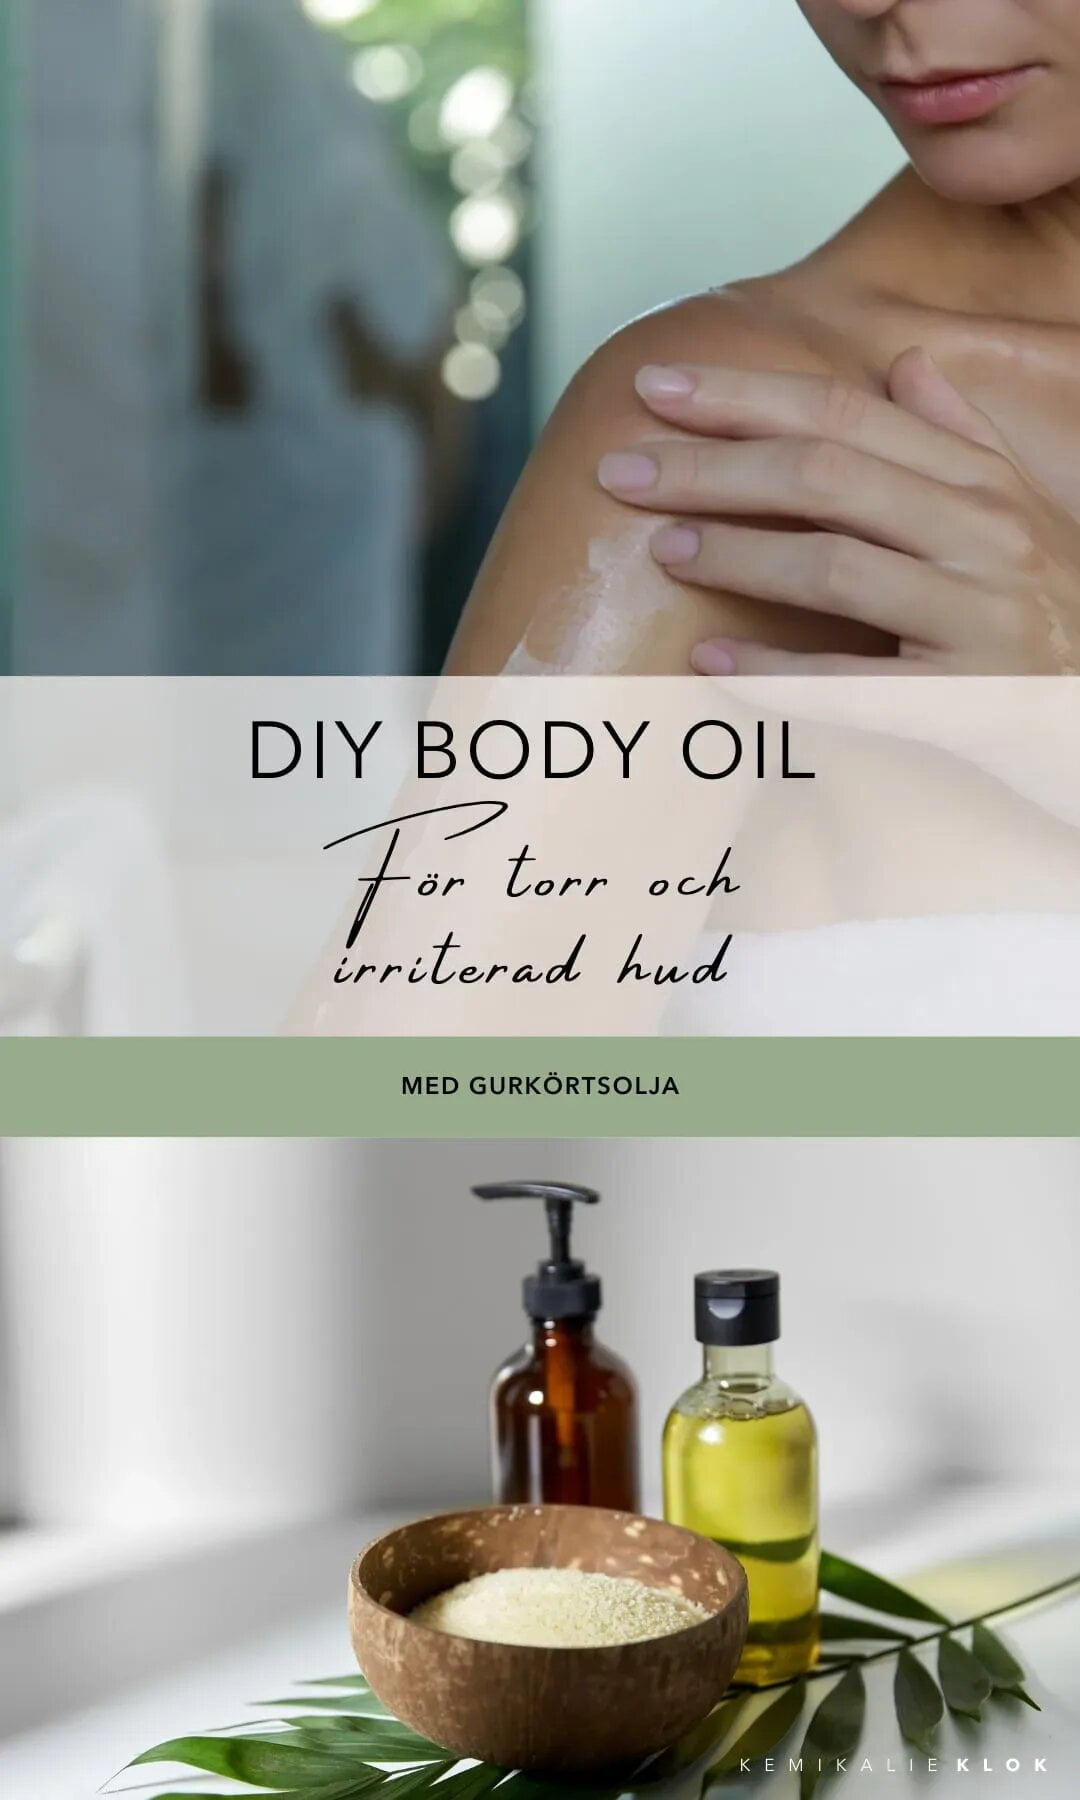 Kemikalieklok - DIY Body Oil - Recept på kroppsolja med naturliga ingredienser